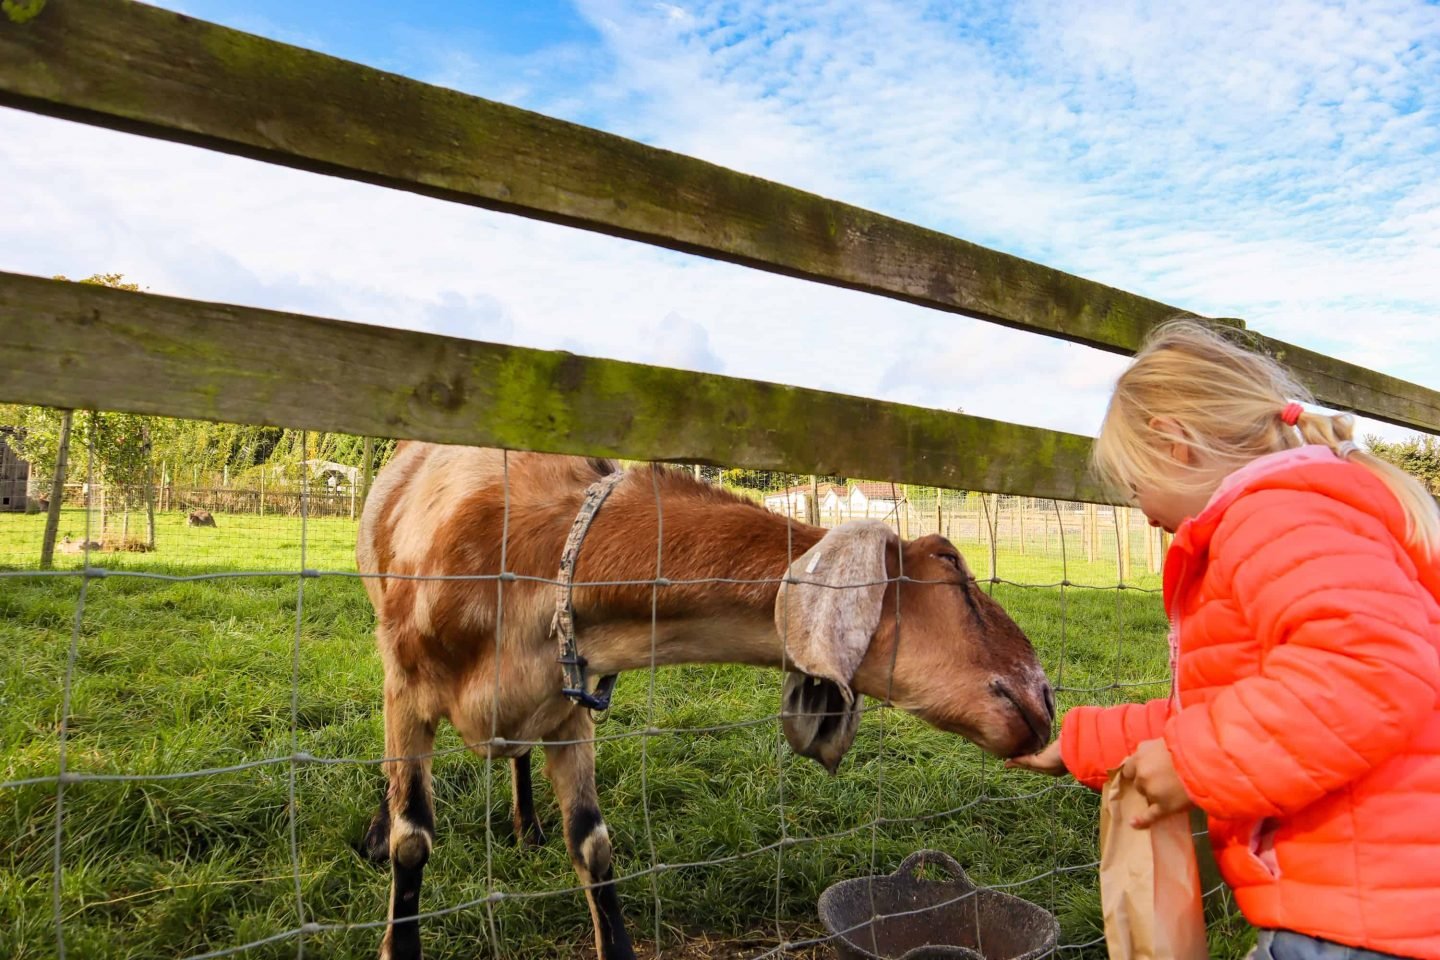 Child feeding goat at Chew Valley Animal Park